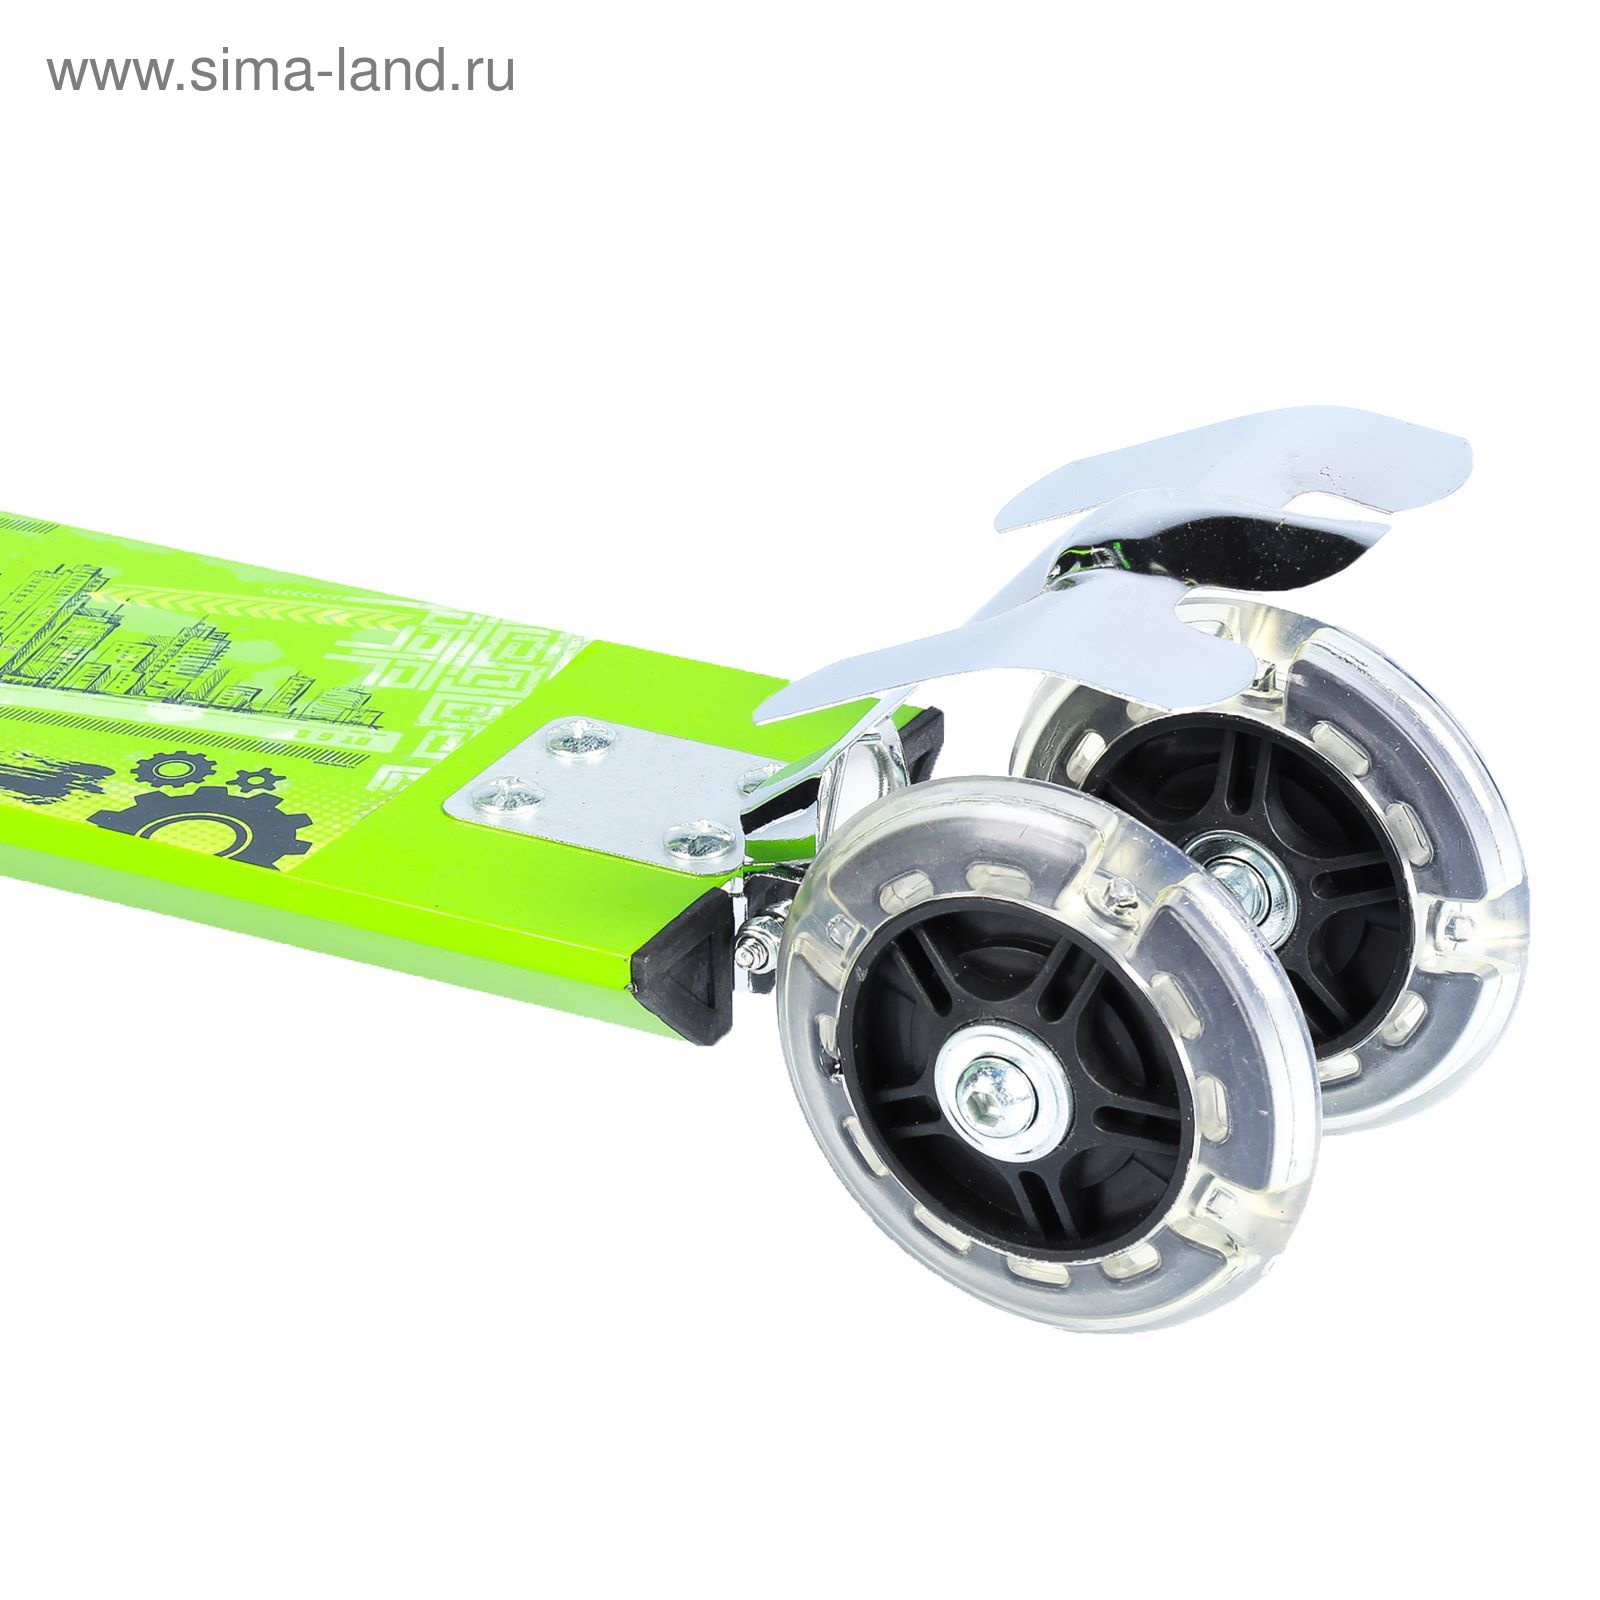 Самокат алюминиевый URBAN ОТ-Н4, три колеса PVC d= 100 мм, цвет зеленый